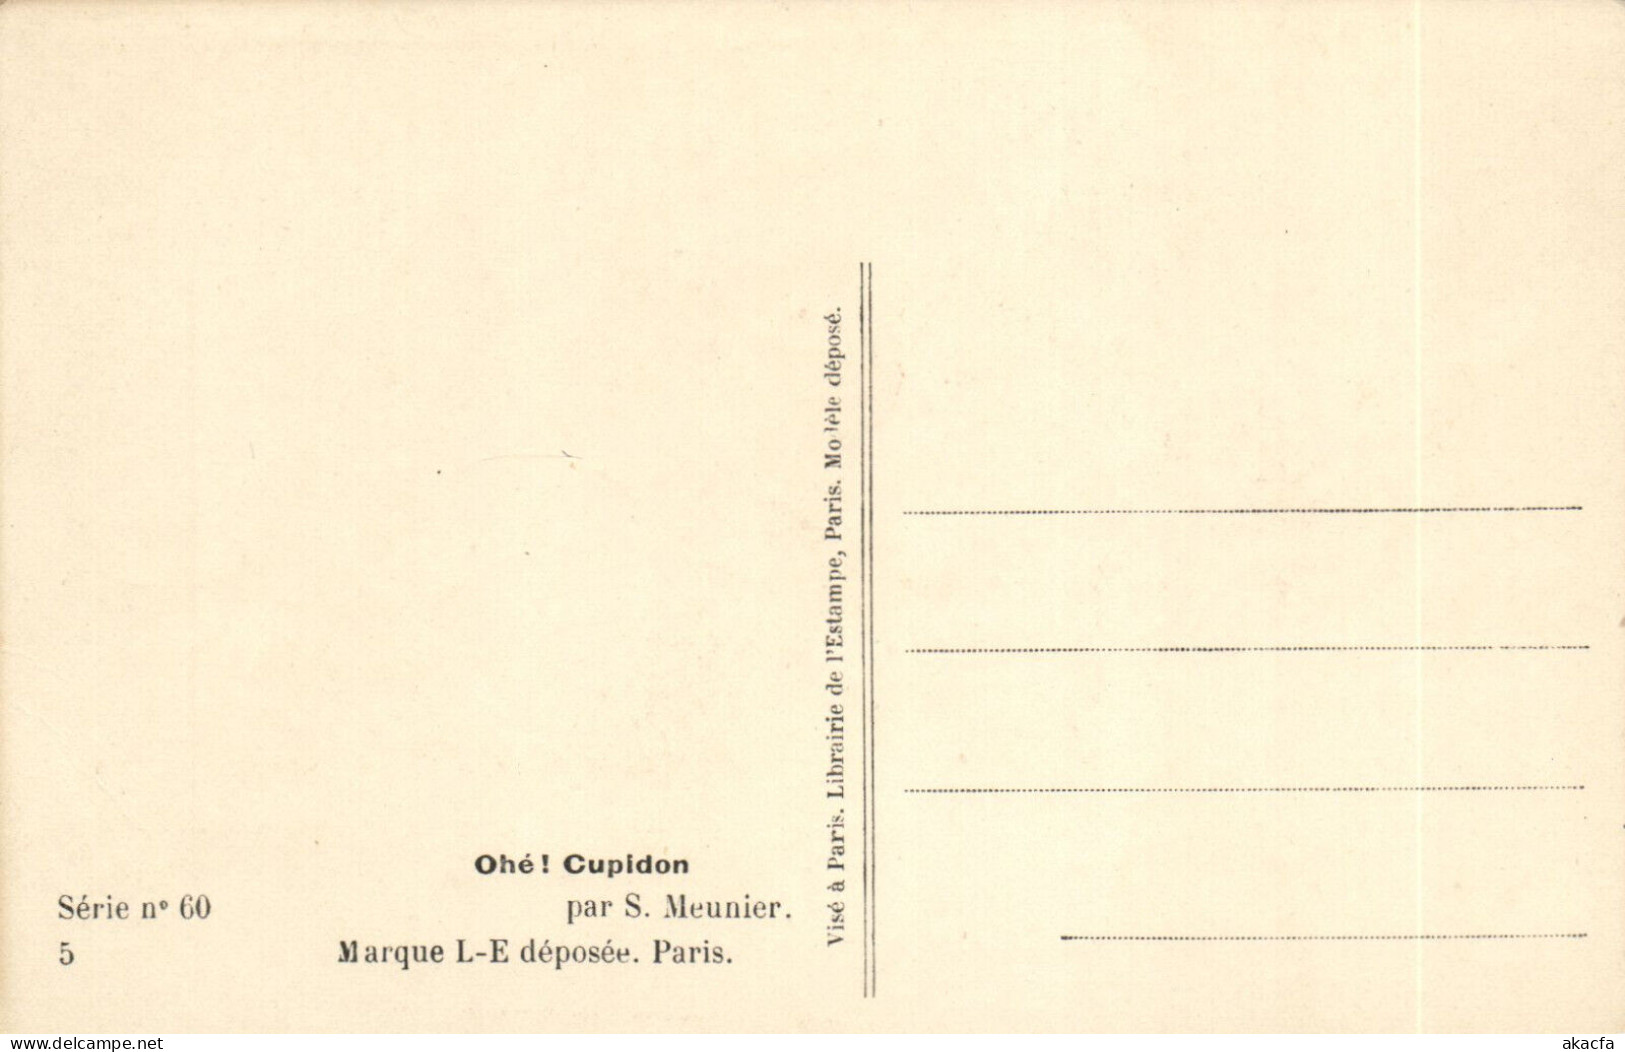 PC ARTIST SIGNED, MEUNIER, RISQUE, OHÉ! CUPIDON, Vintage Postcard (b50664) - Meunier, S.